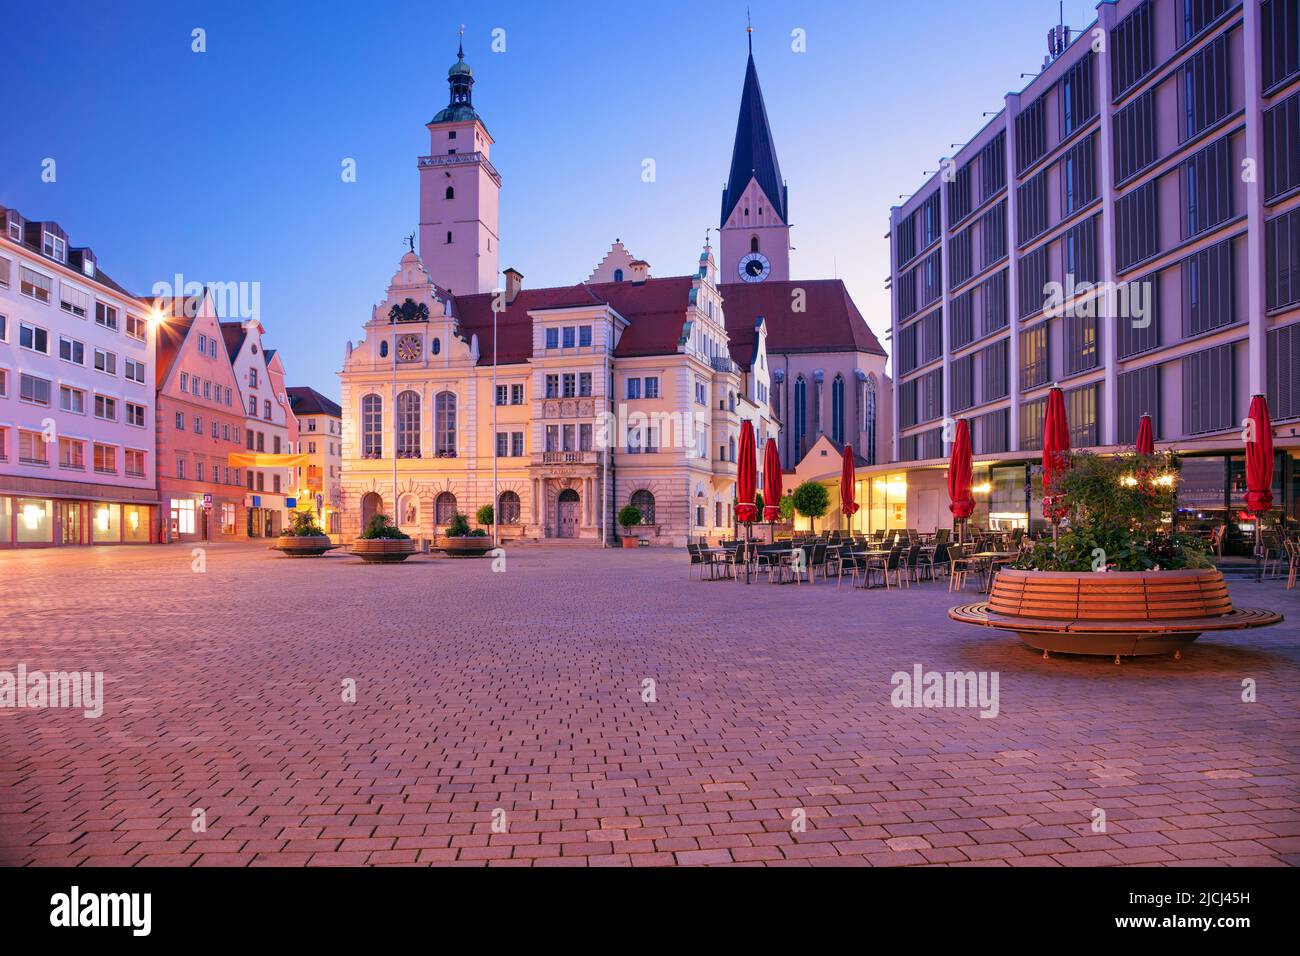 Ingolstadt, Alemania. Imagen del paisaje urbano del centro de Ingolstadt, Alemania, con el ayuntamiento al amanecer. Foto de stock